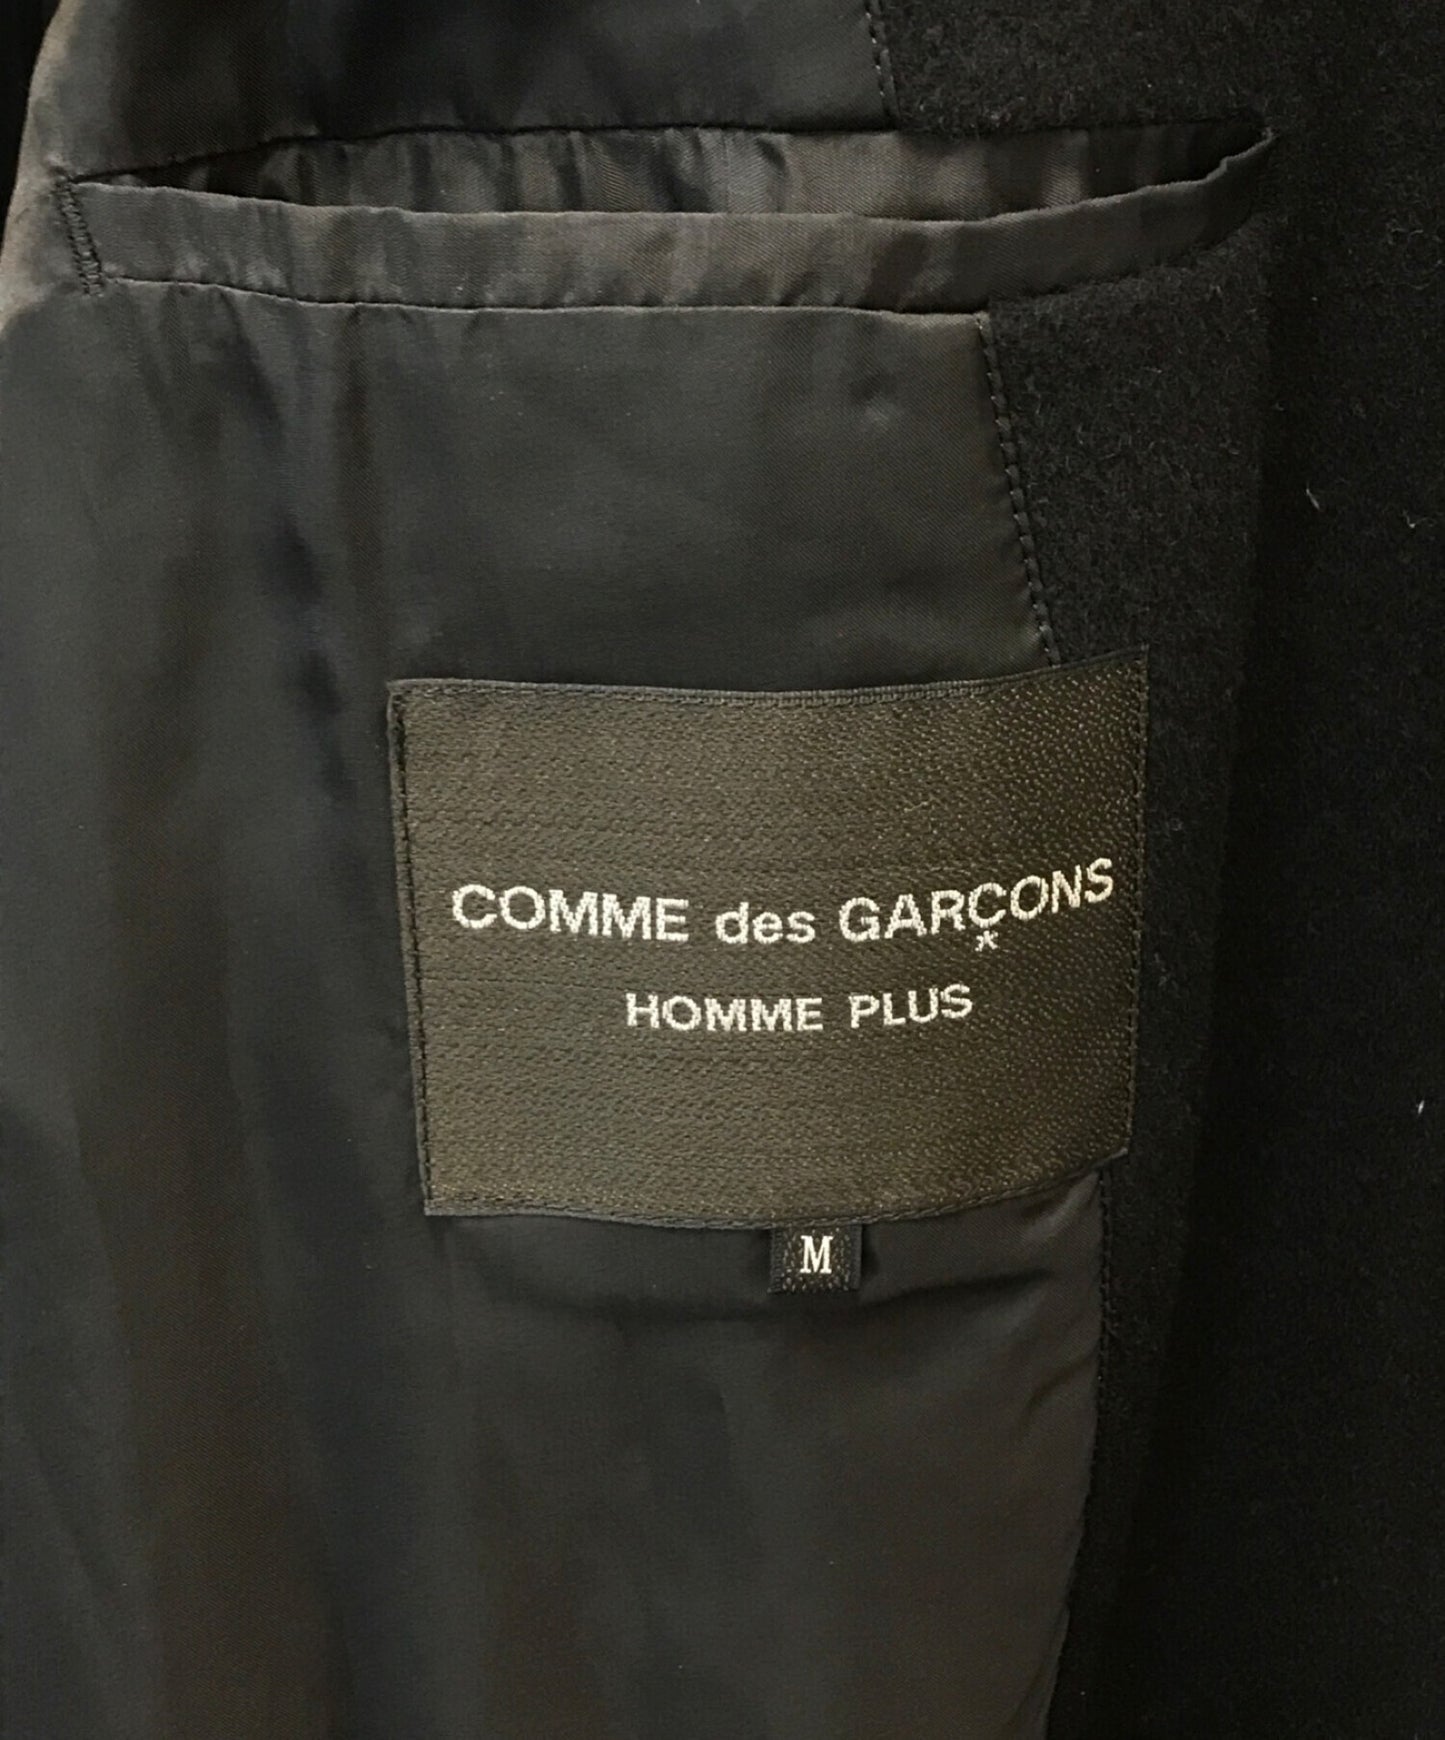 Comme des Garcons Homme Plus 19AW 캐시미어 블렌드 컷 아웃 더블 벨트 코트, 맞춤 코트, Long Coat PD-C006